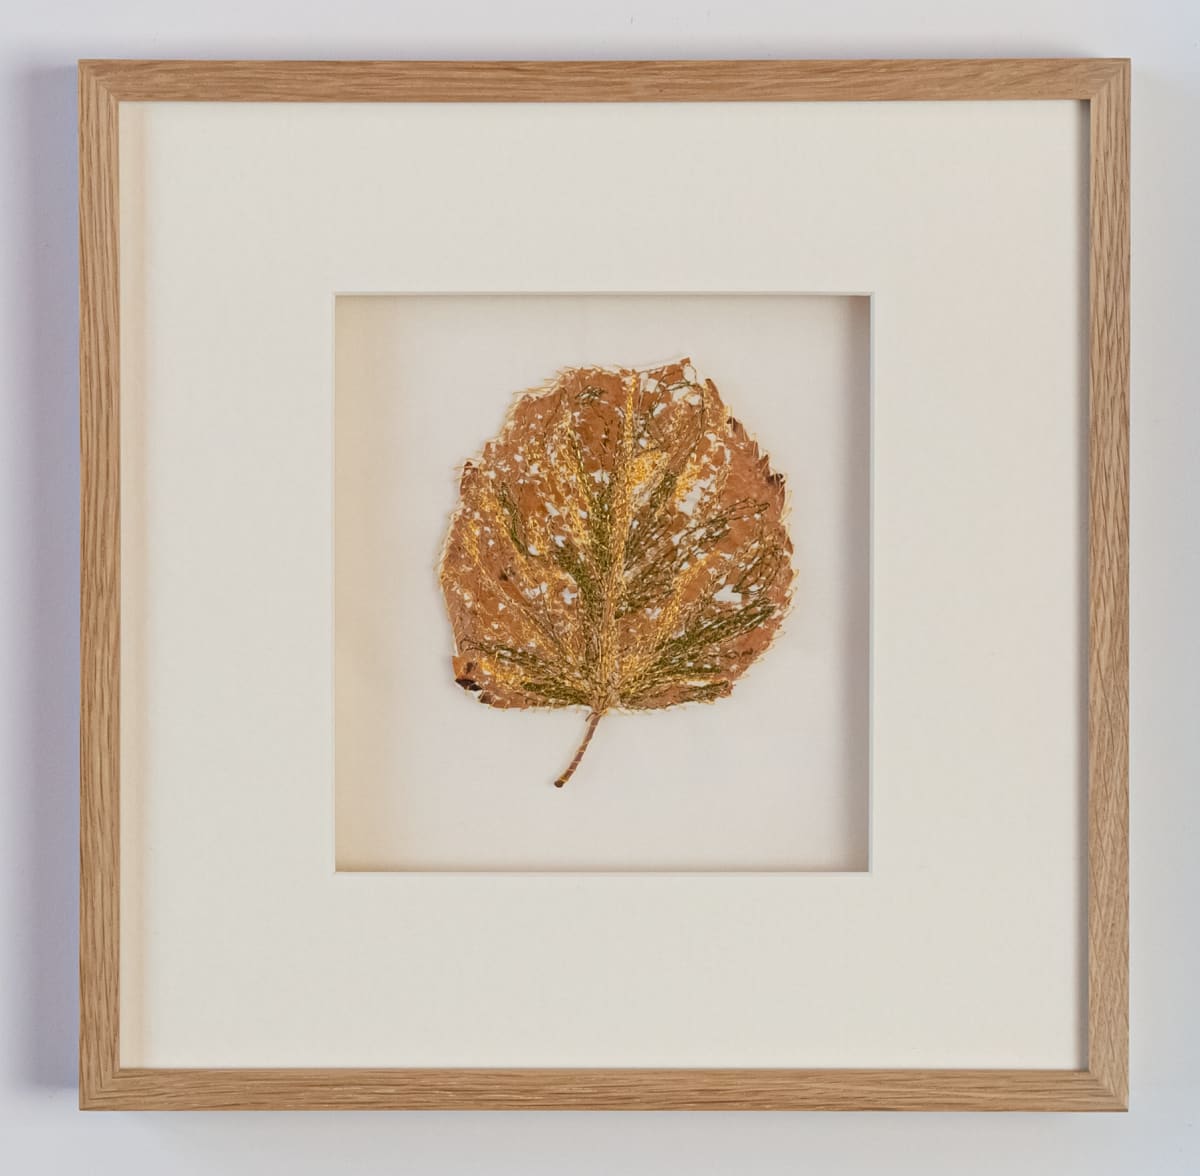 Floating Leaf by Susan D'souza  Image: Framed Textile Original